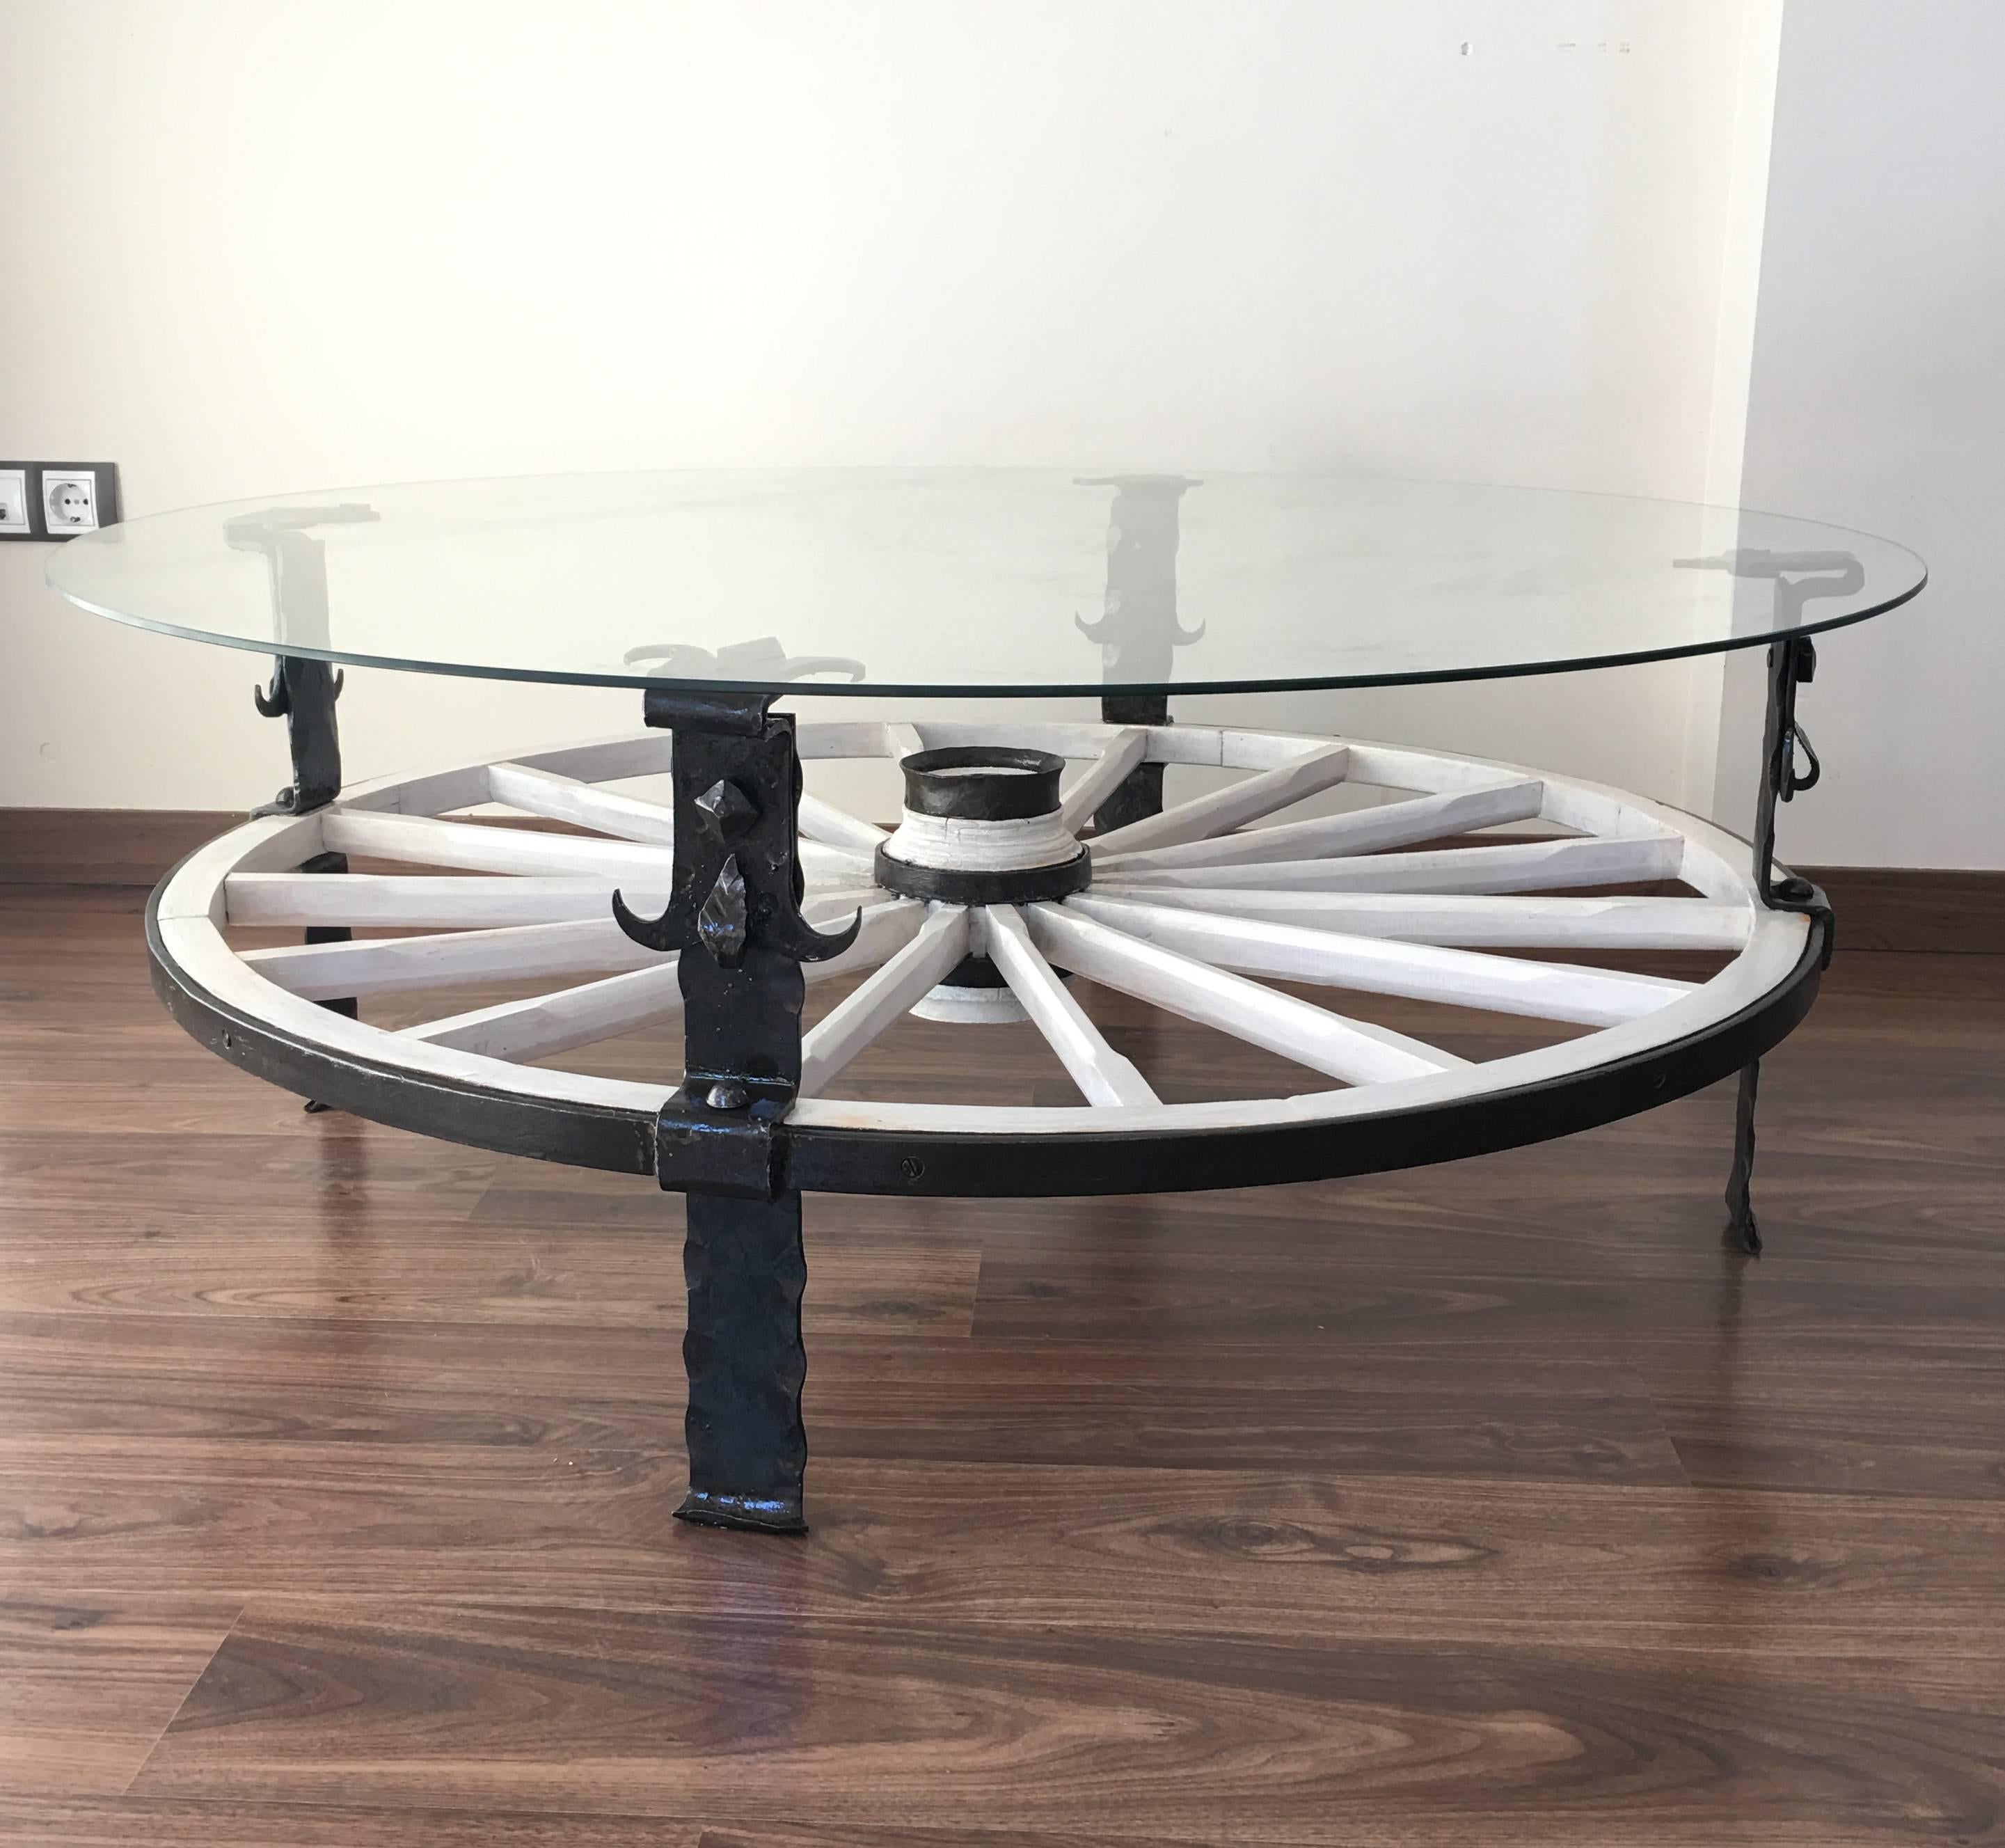 Table d'appoint en bois avec plateau en verre et roue blanche.

Intérieur et extérieur